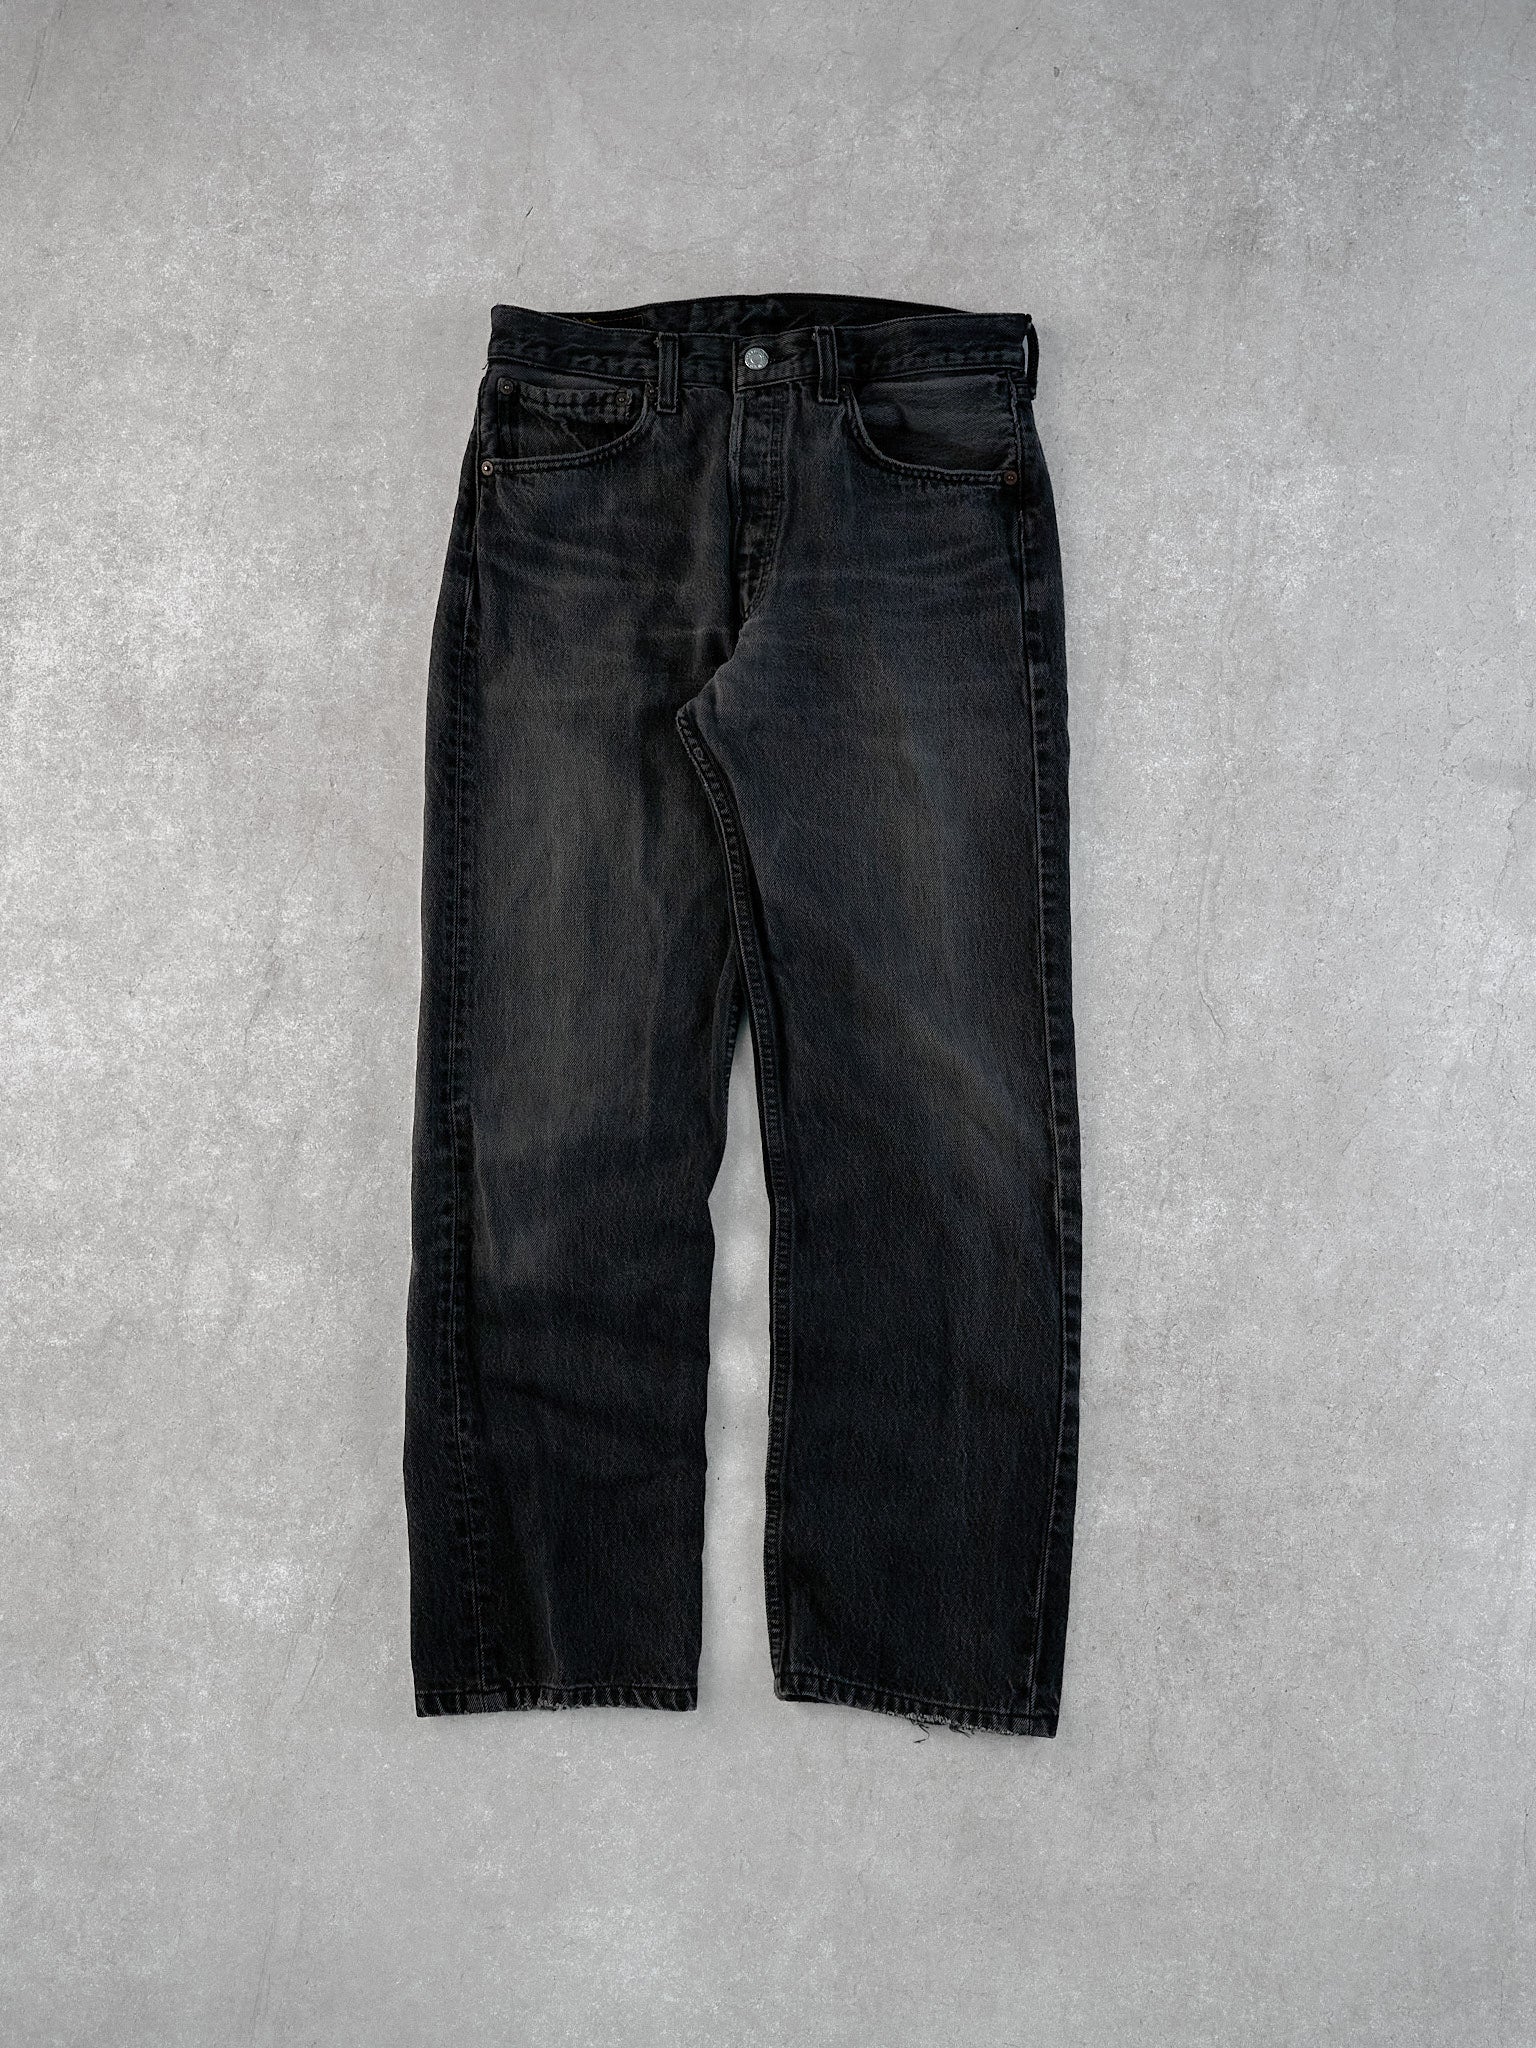 Vintage 90s Black Levi's 501 Denim Jeans (32x32)